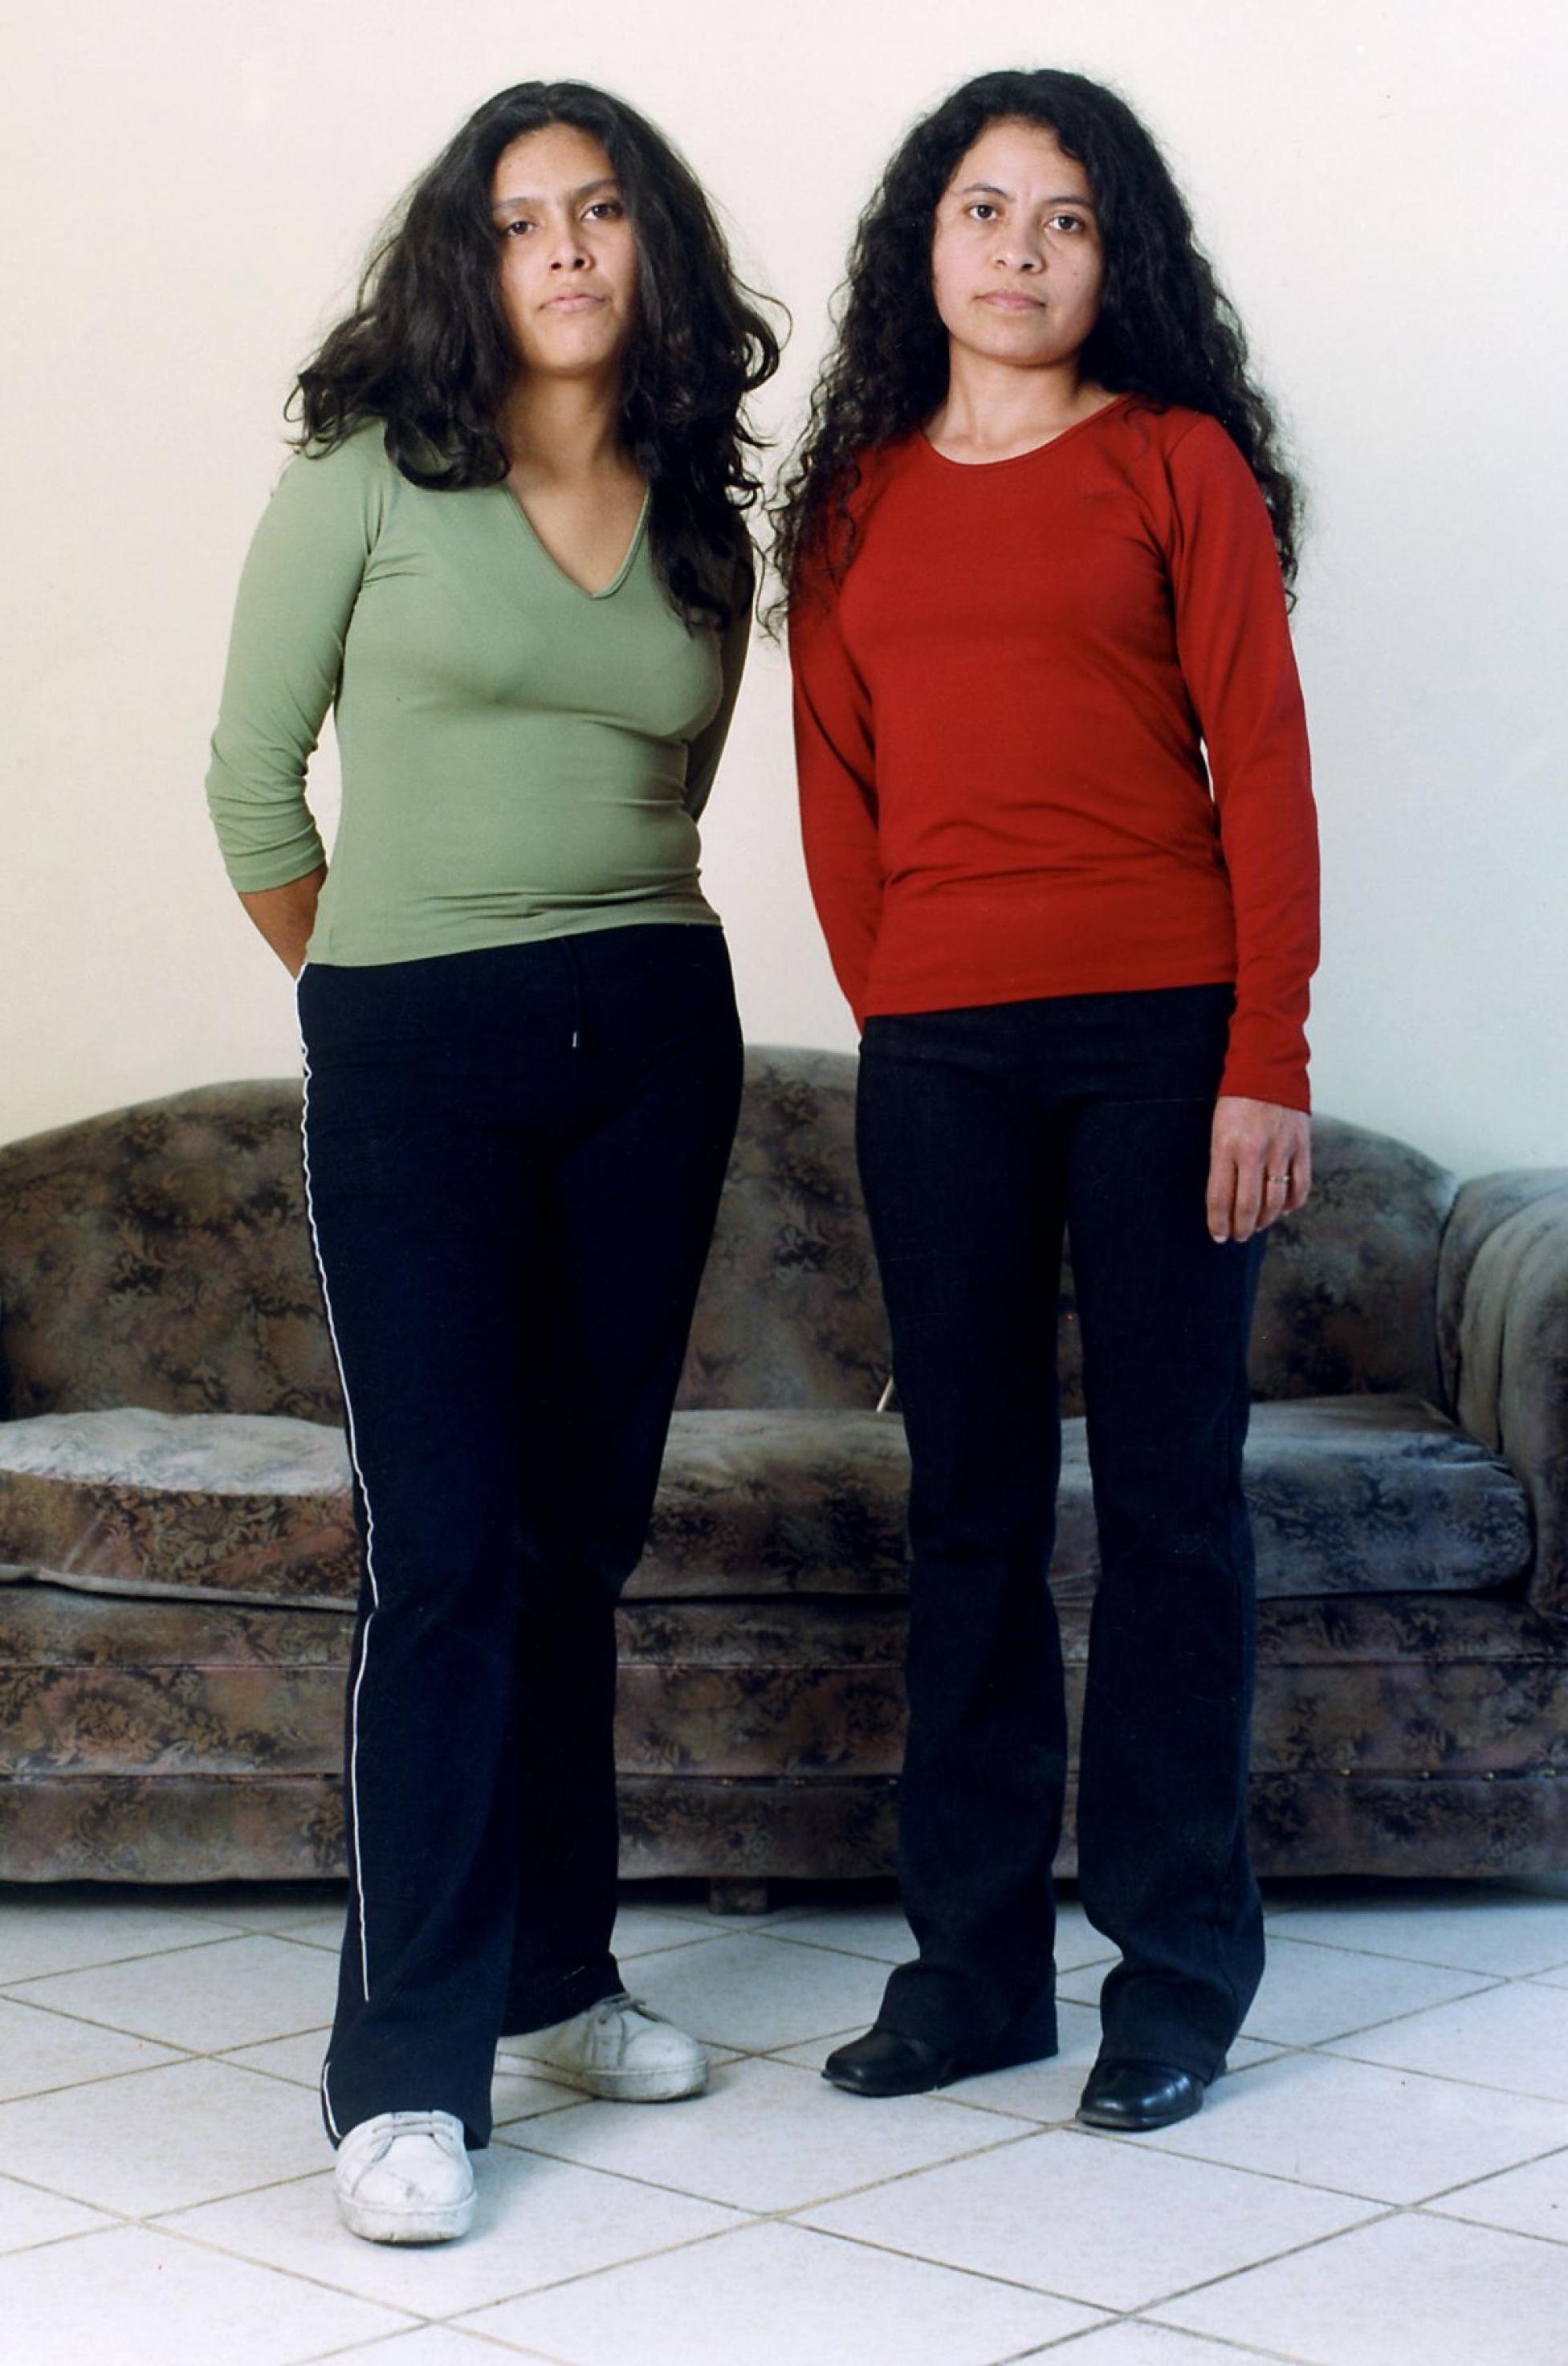 Zwei junge Frauen stehen nebeneinander und blicken in die Kamera. Beide sind ungefaehr gleich gross, haben dieselbe Hautfarbe und  tragen die langen schwarzen Haare offen.